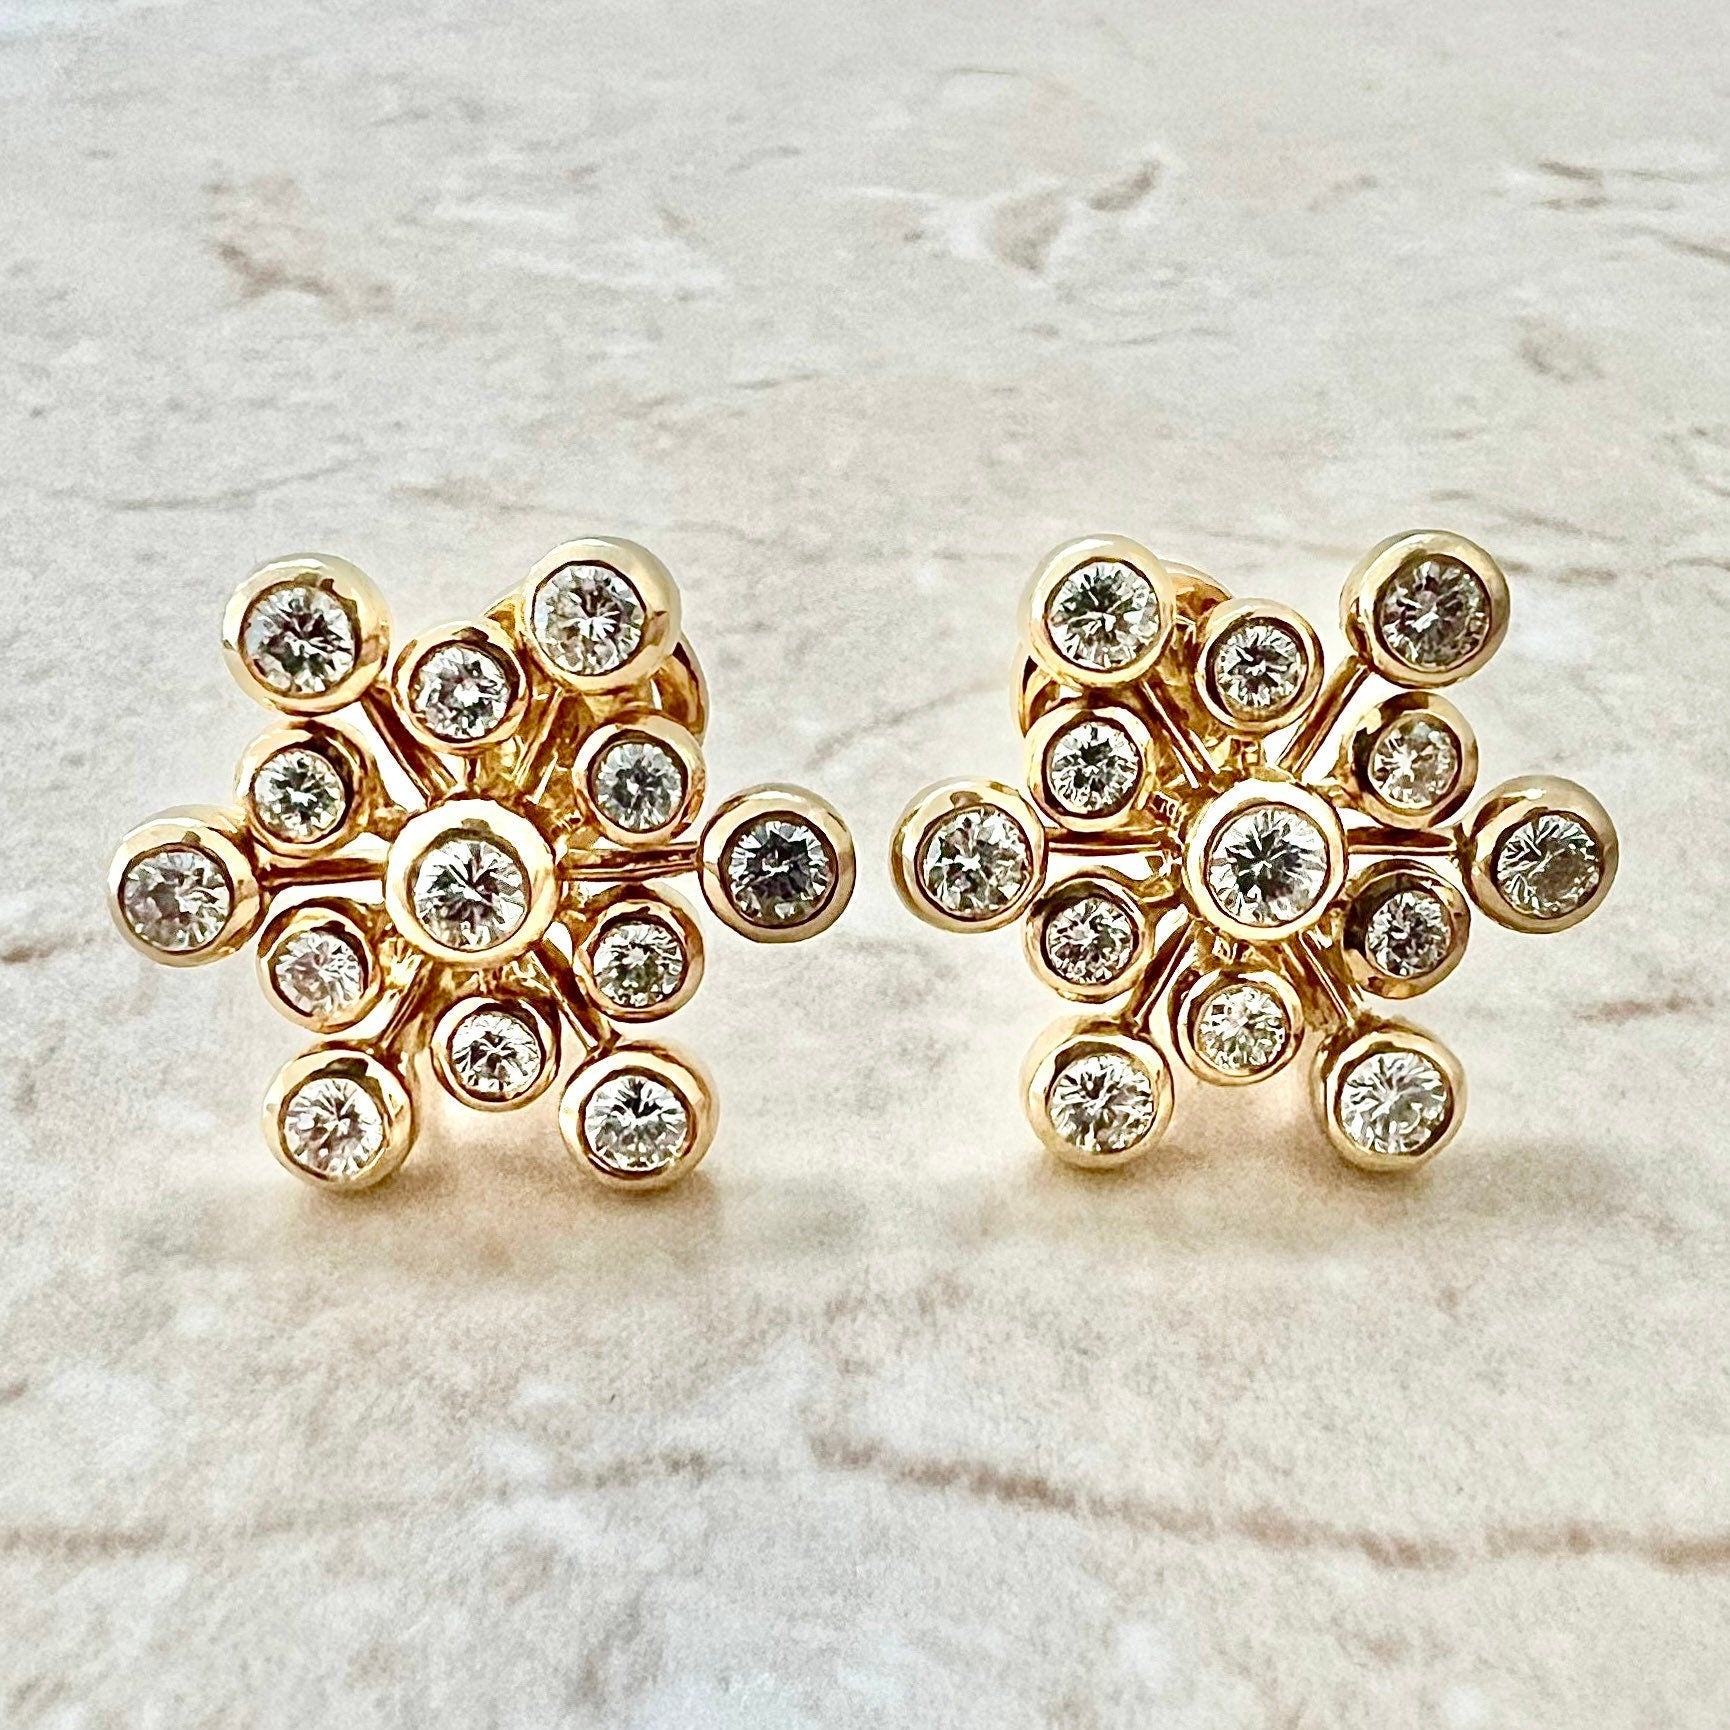 Fine 18K Yellow Diamond Snowflake Earrings By Carvin French - Yellow Gold Diamond Earrings - Diamond Cluster Earrings - Handcrafted Earrings